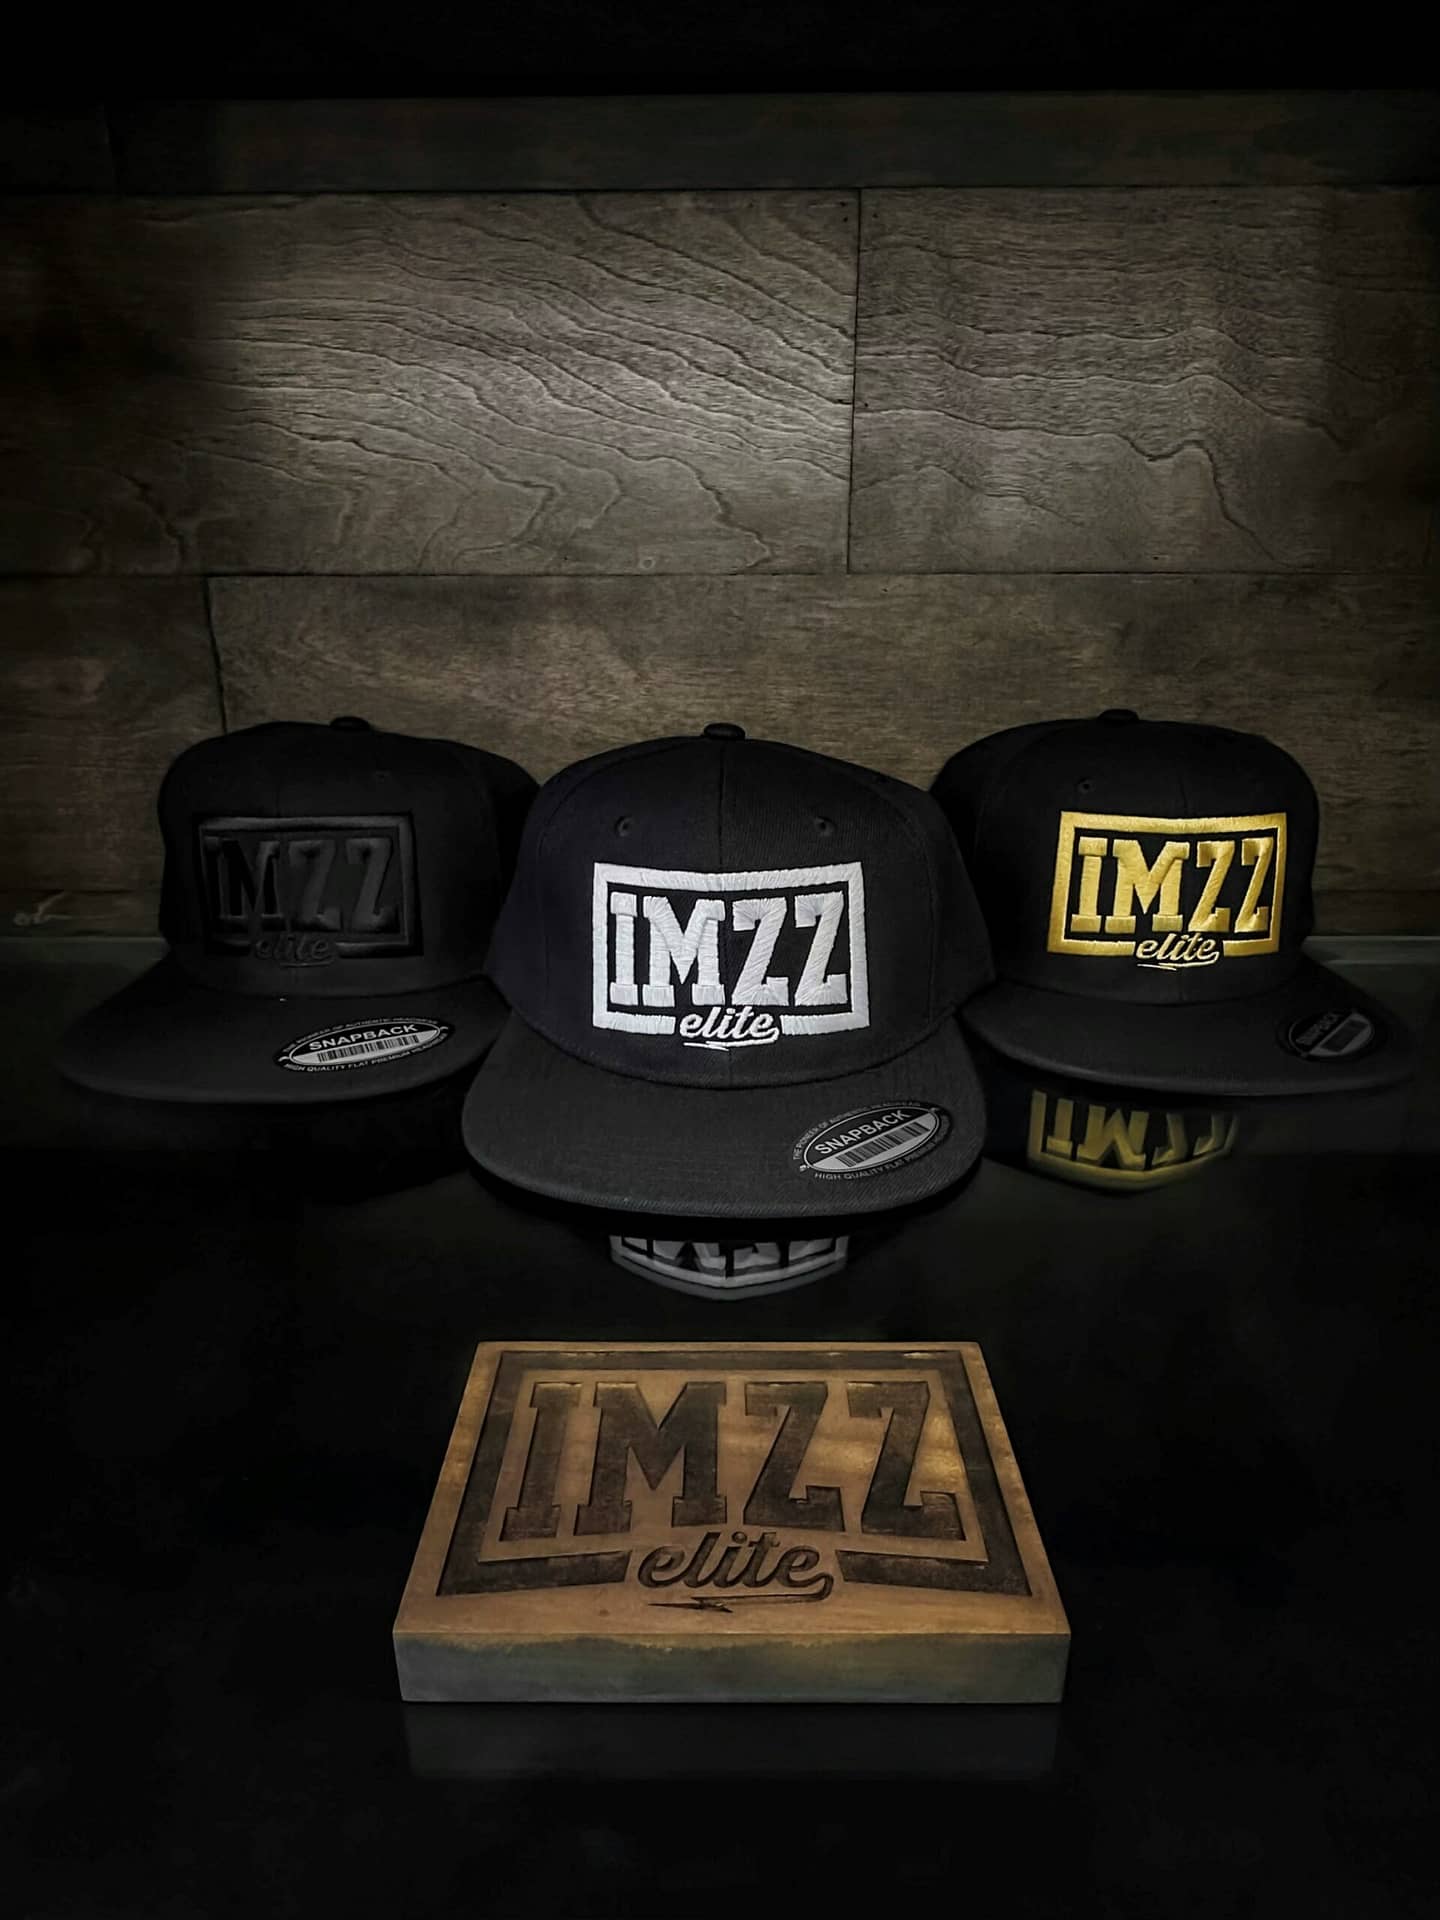 Imzz Elite Classic Snapback Hat, Imzz Elite